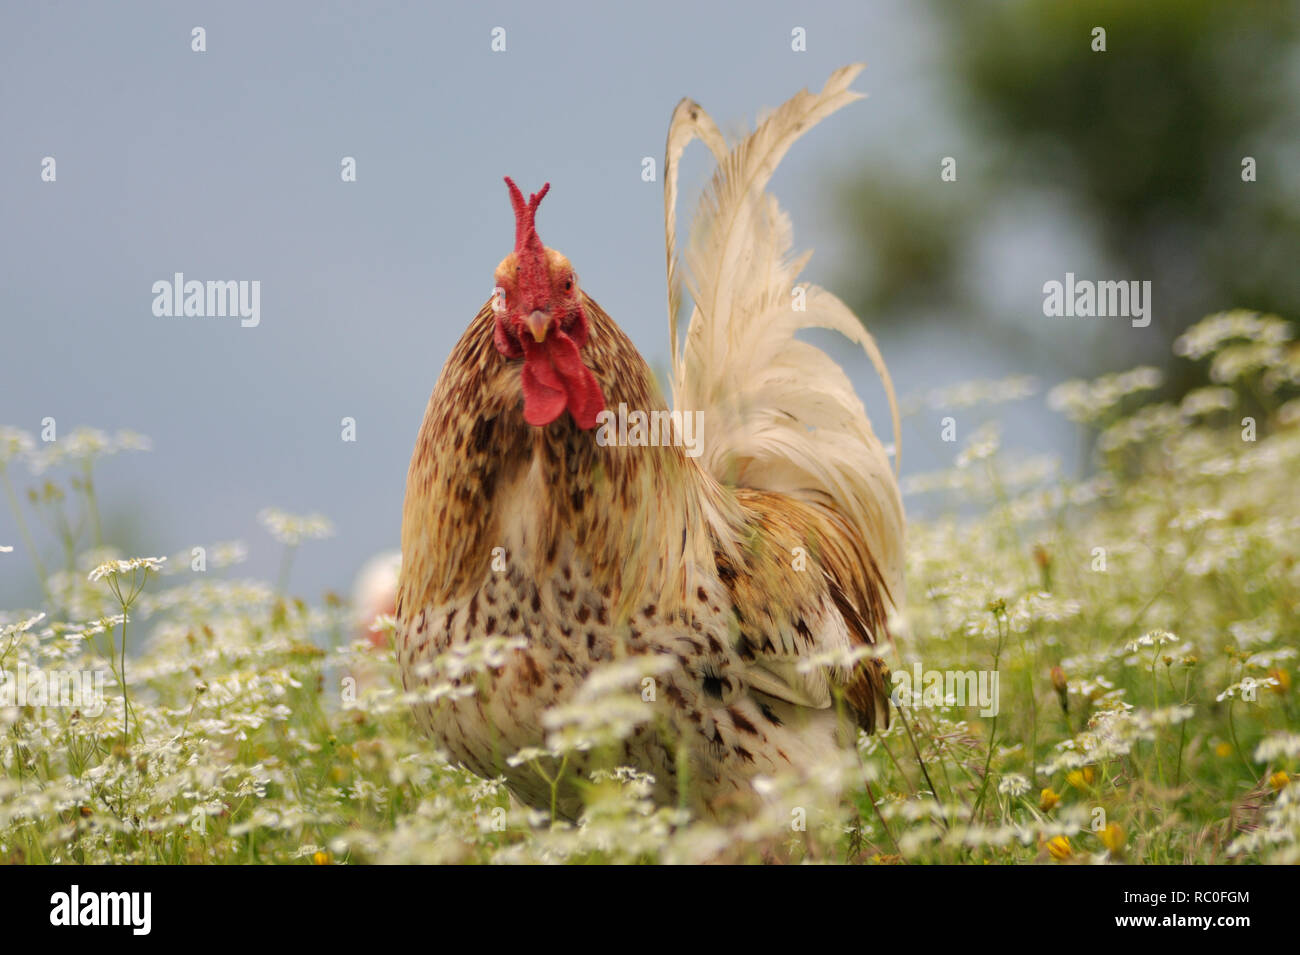 Hühner in freier Natur auf der Wiese Stock Photo